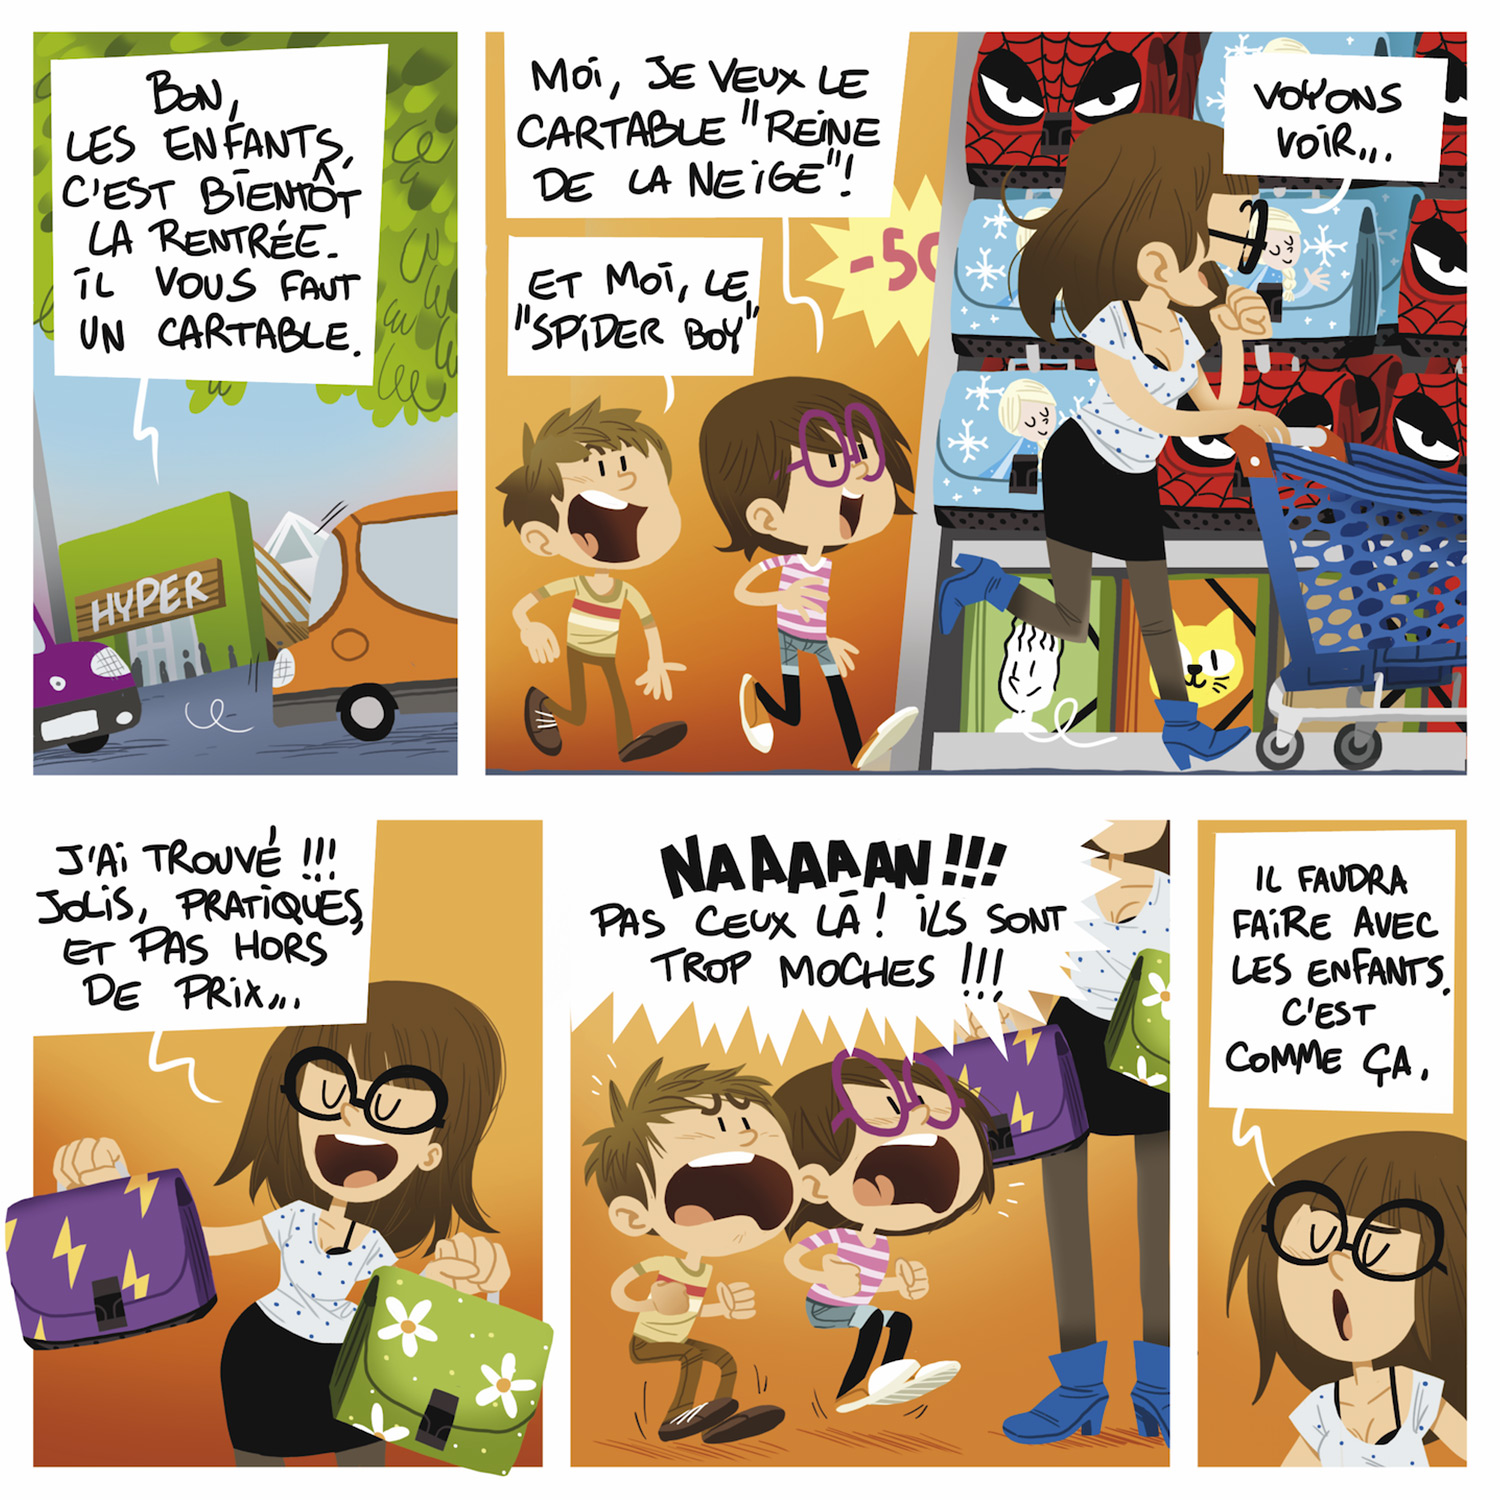 Minig-Ville de Vannes-BD-bande dessinée-magazine-jeunesse-illustration